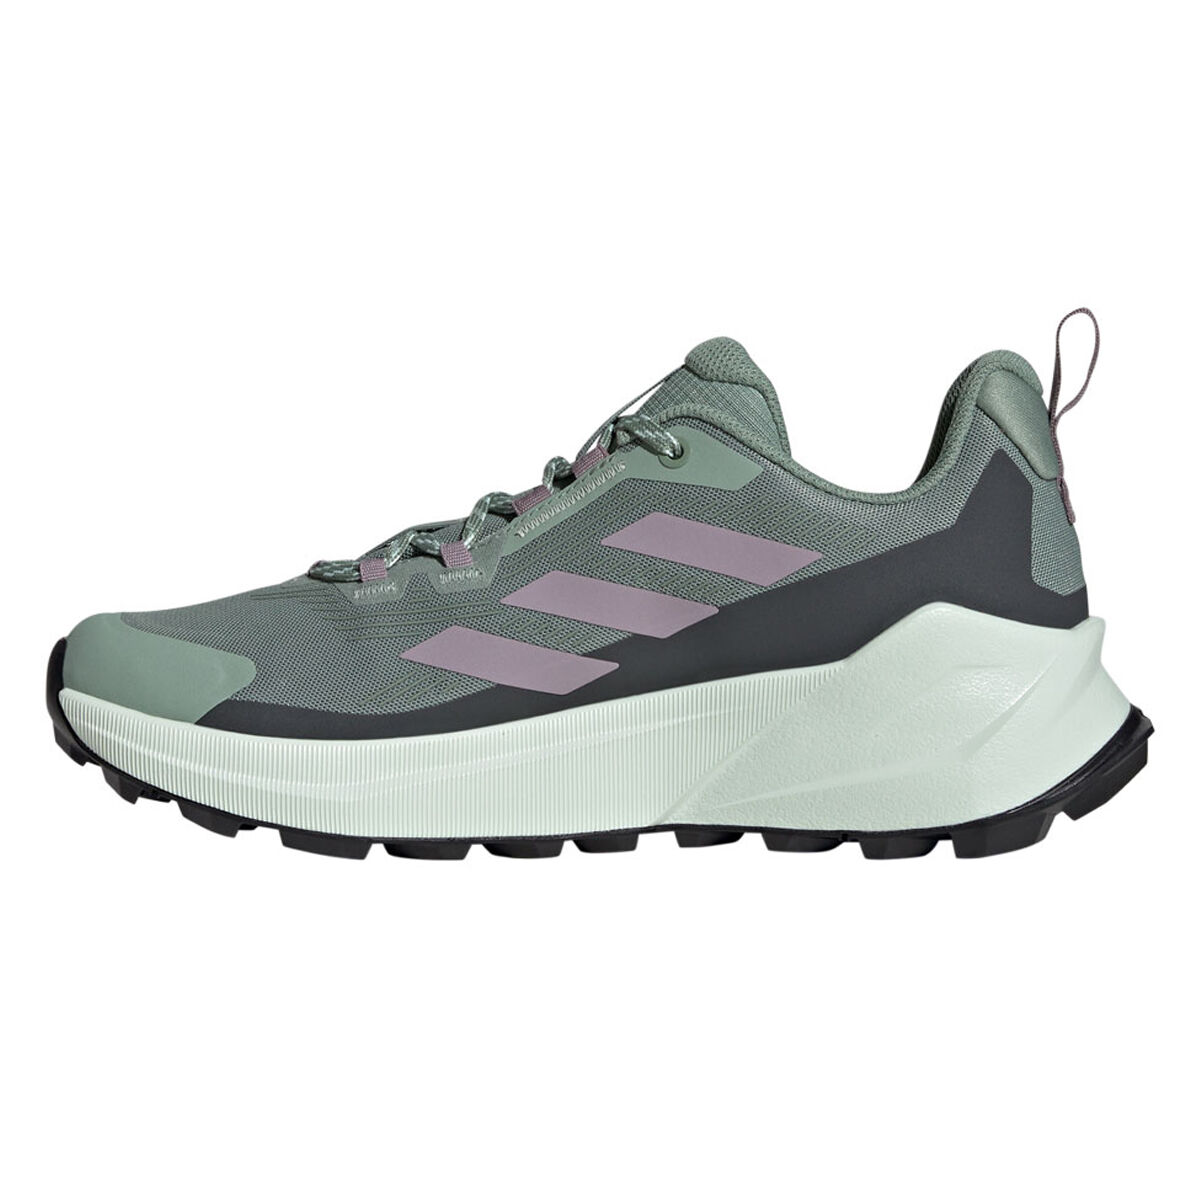 adidas Terrex - Hiking Shoes, Clothing & more - rebel